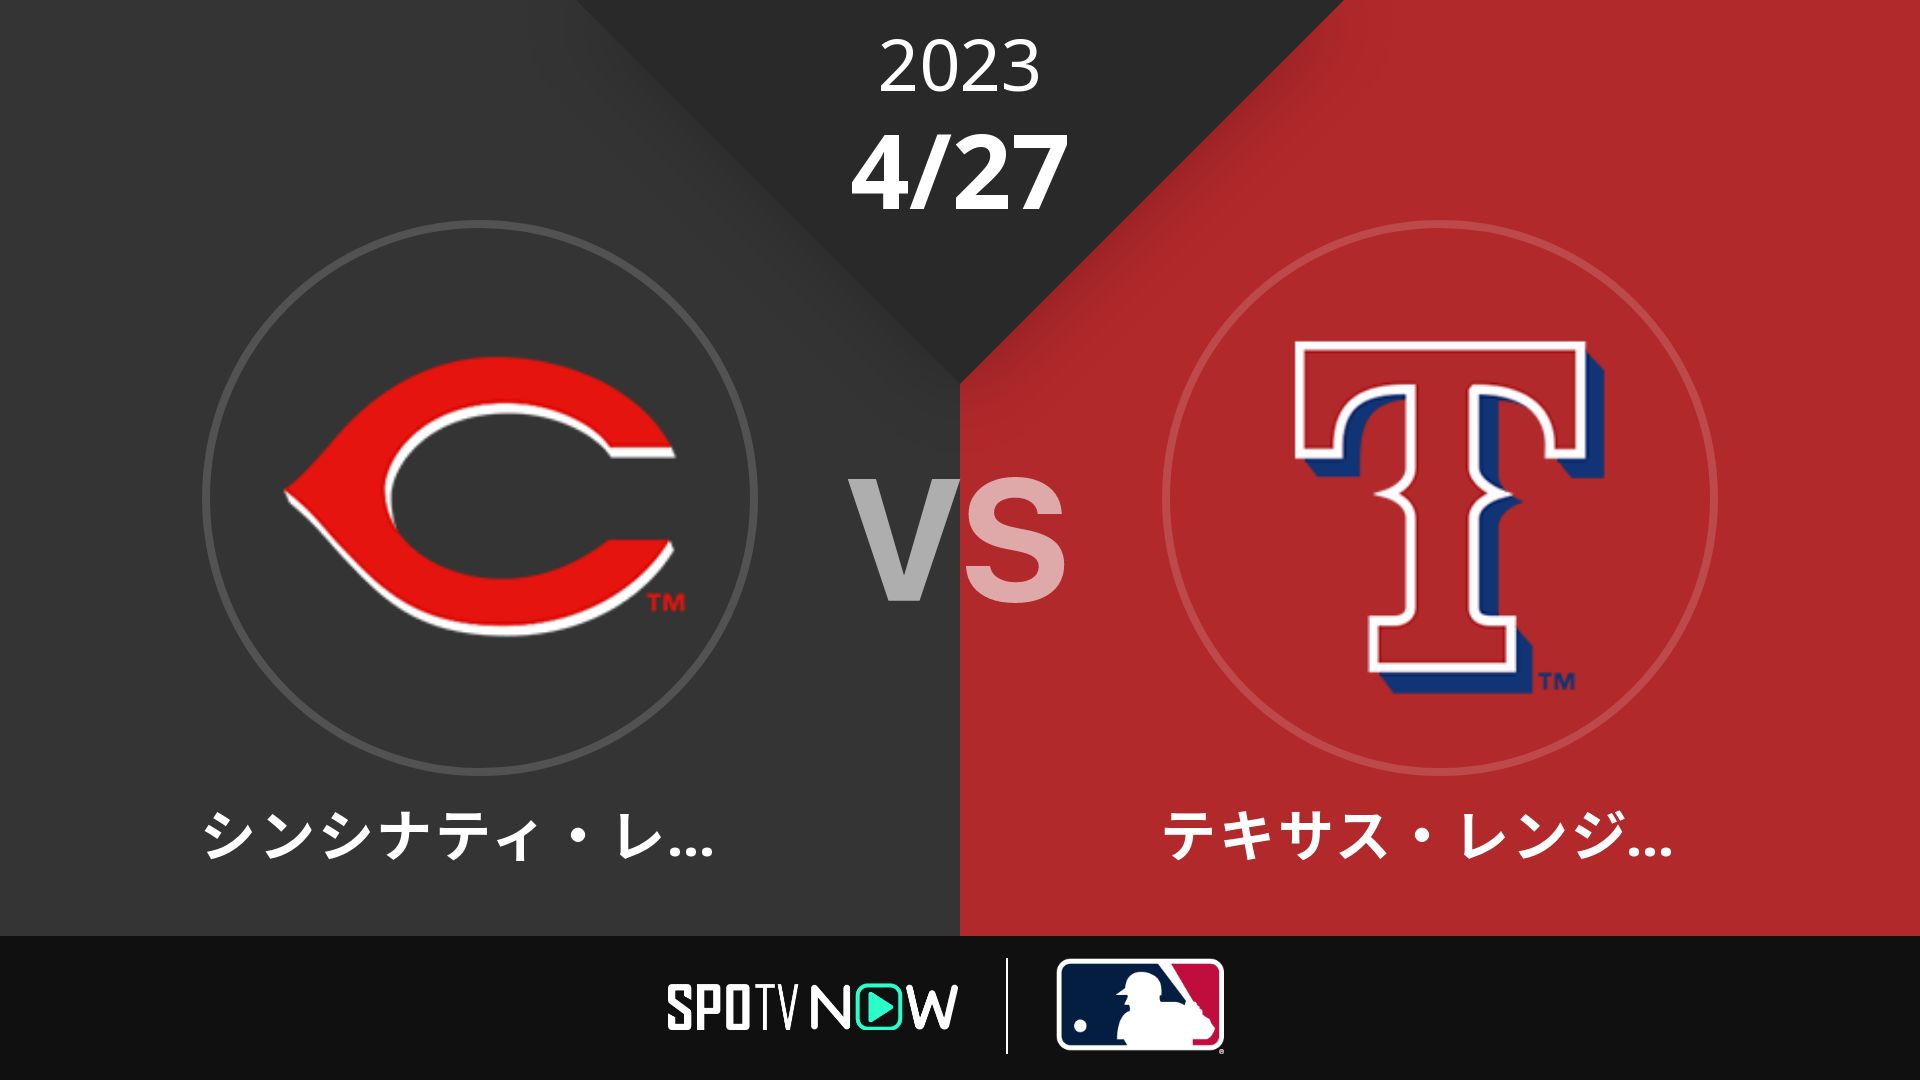 2023/4/27 レッズ vs レンジャーズ [MLB]